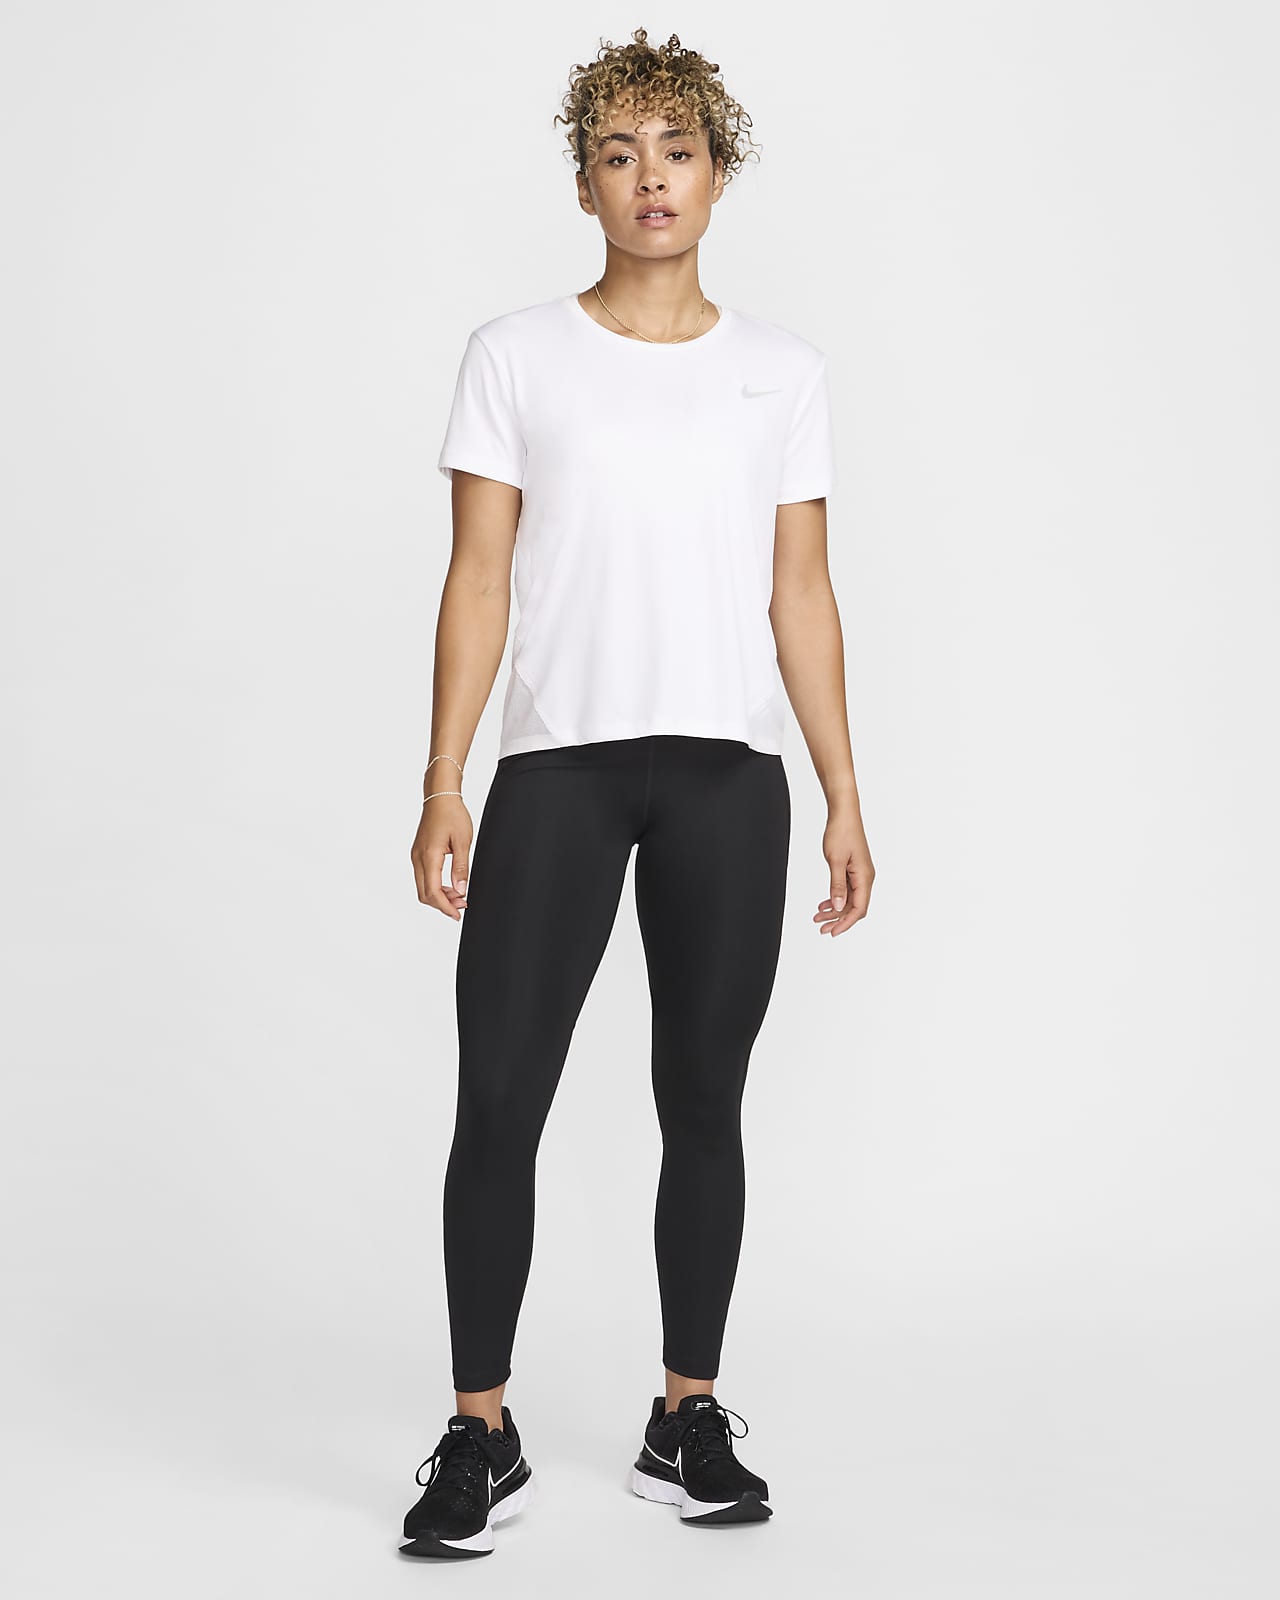 Leggings de running para mujer. Nike ES